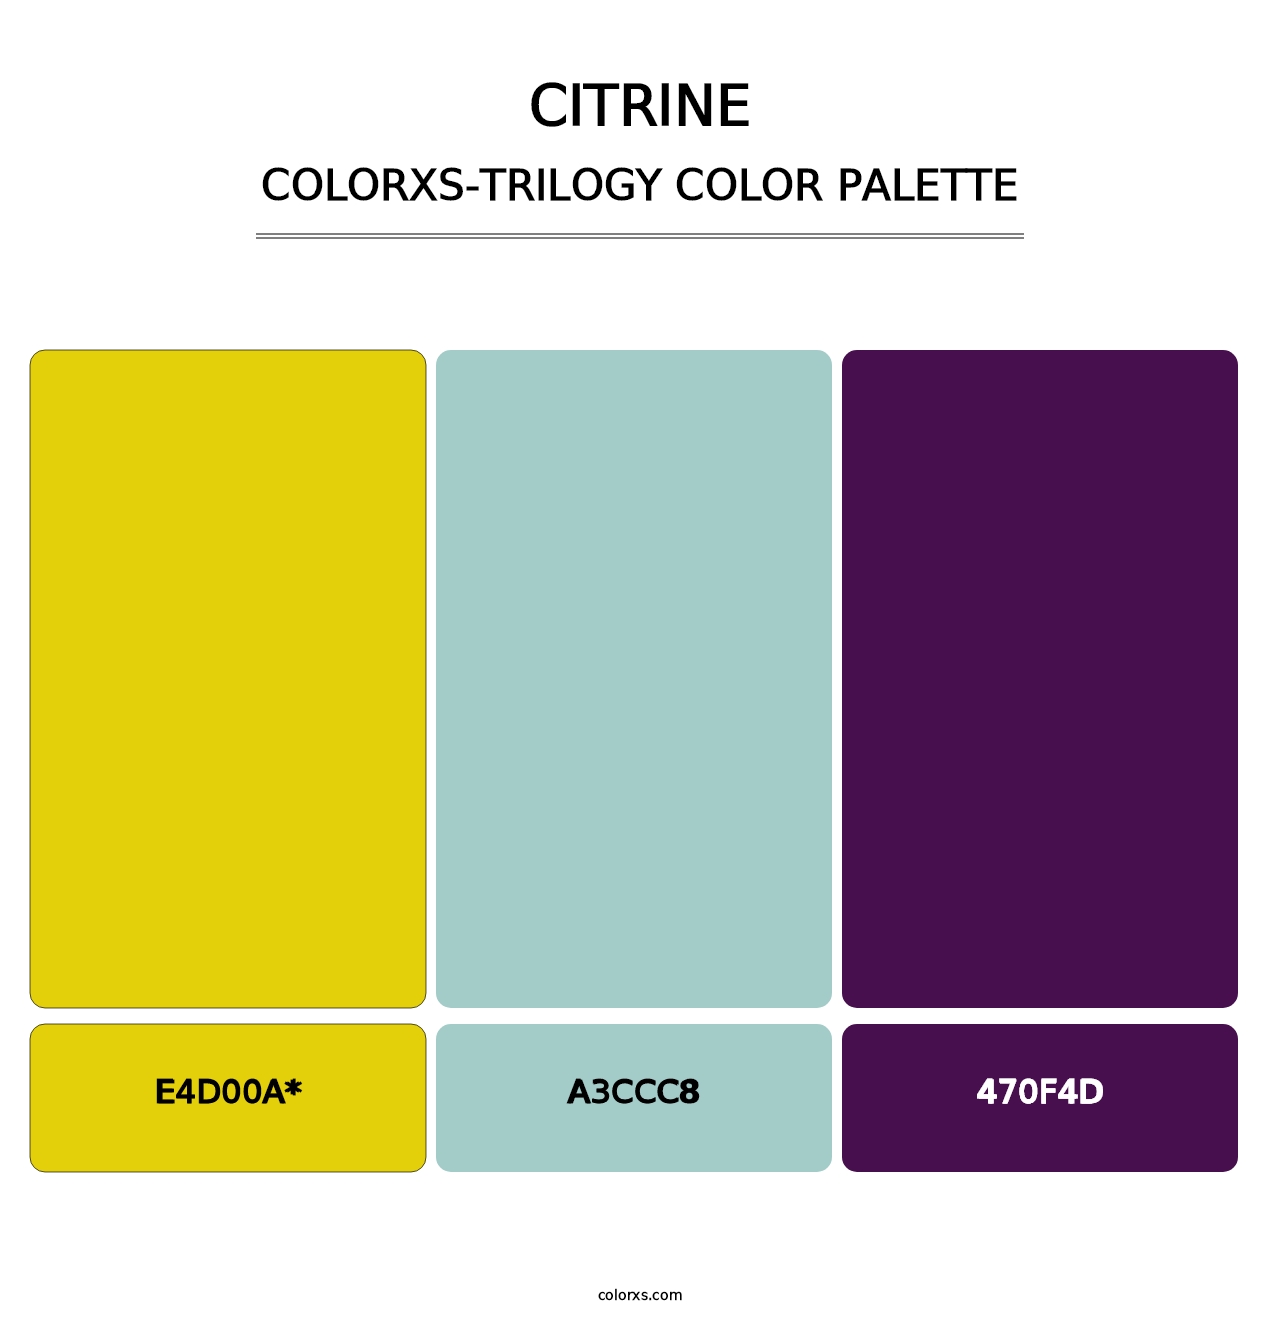 Citrine - Colorxs Trilogy Palette